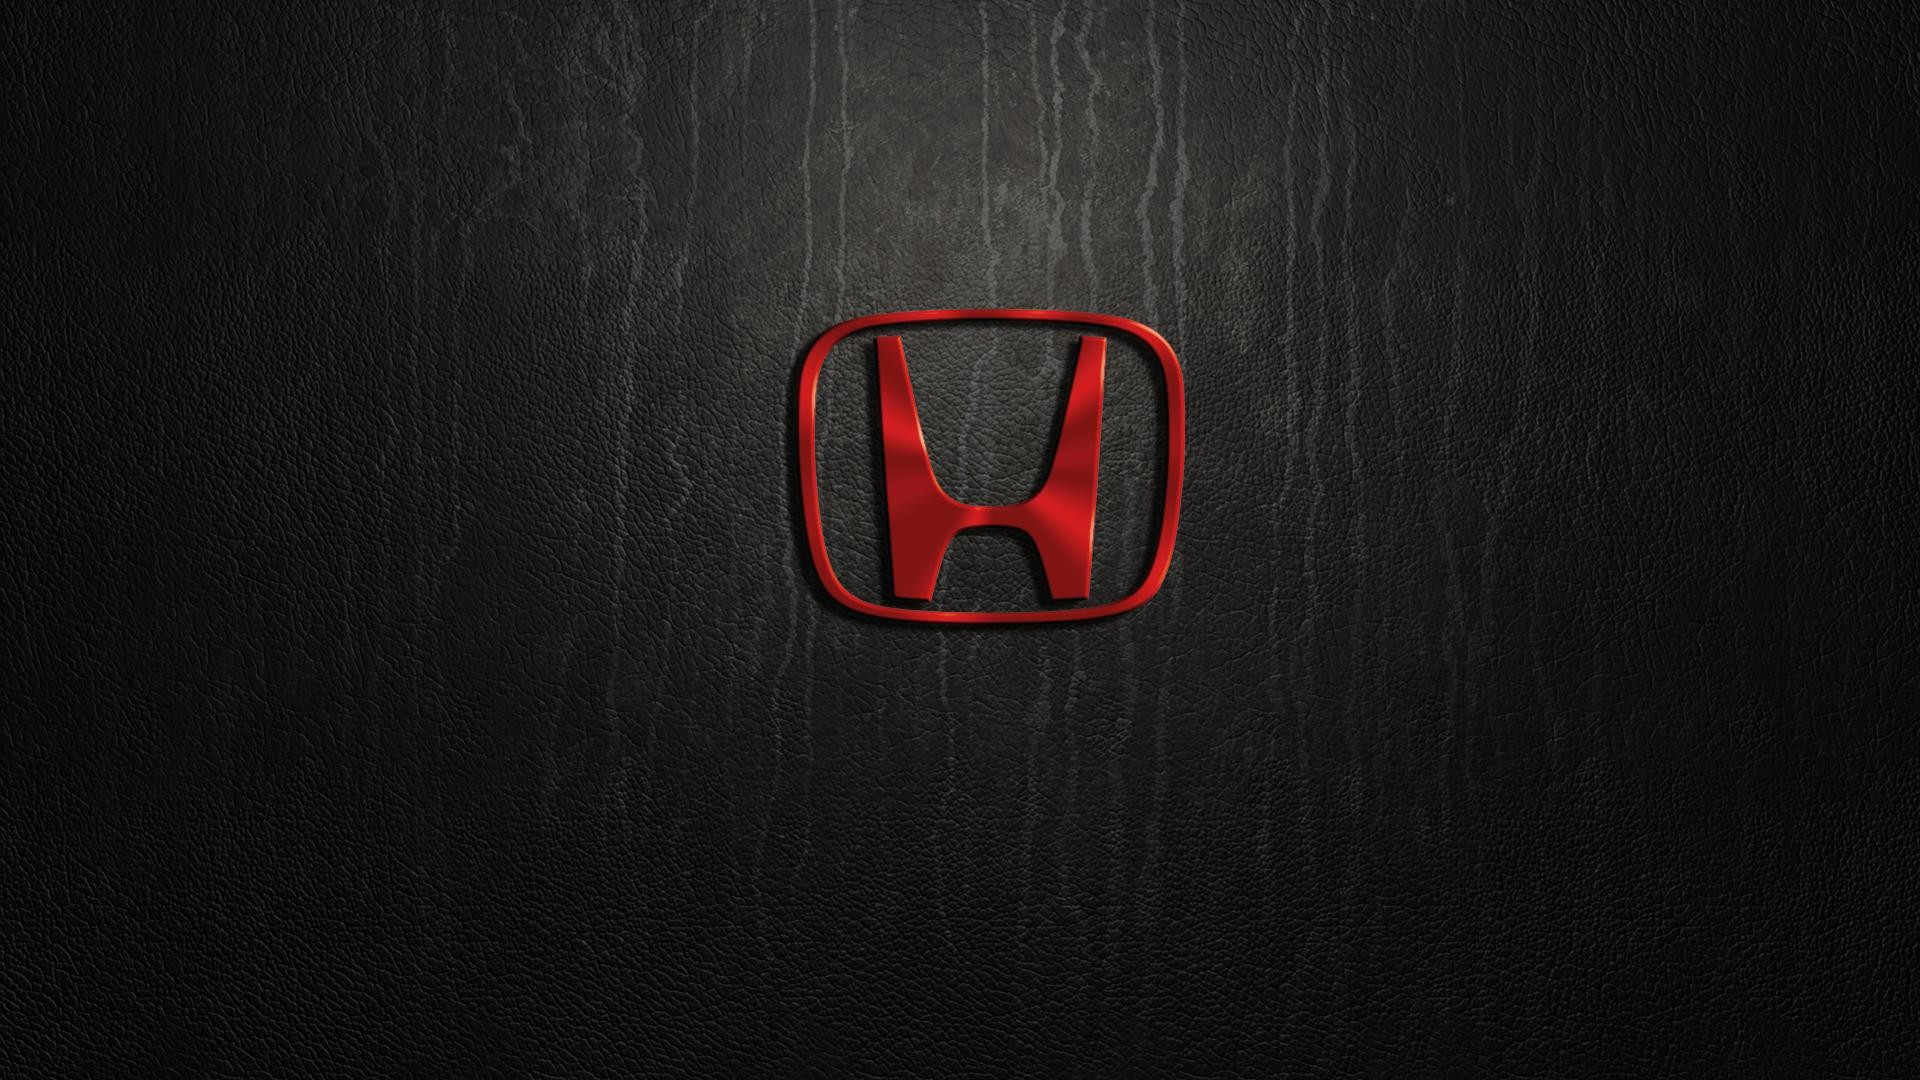 Honda Symbol Wallpapers